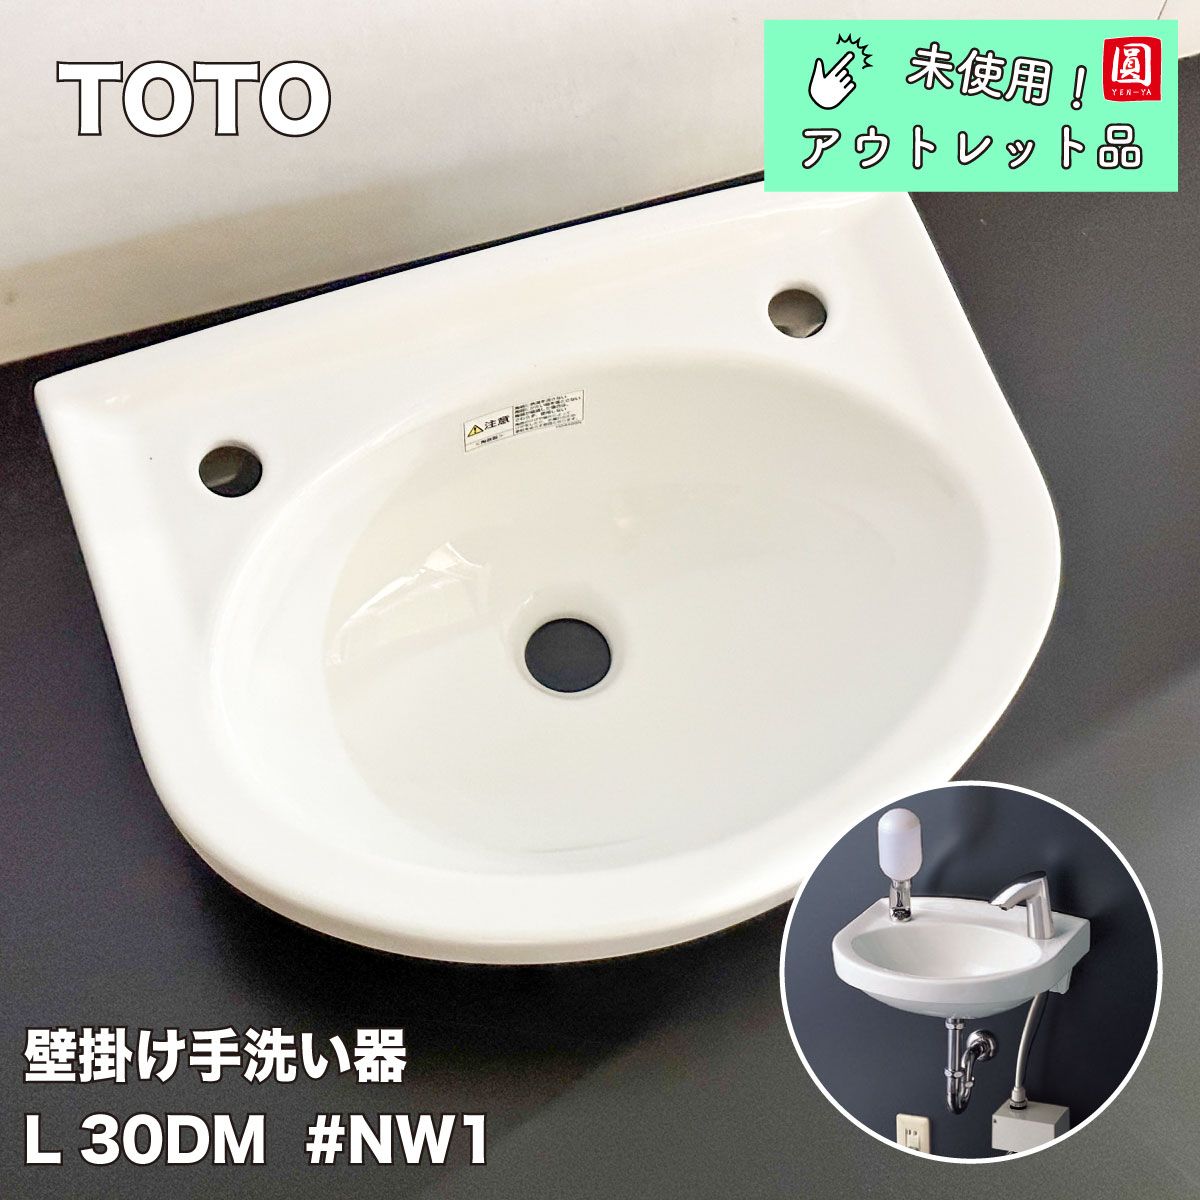 TOTO 壁掛手洗器 L30DM#NW1(水栓・石鹸入れは別売り) - メルカリ